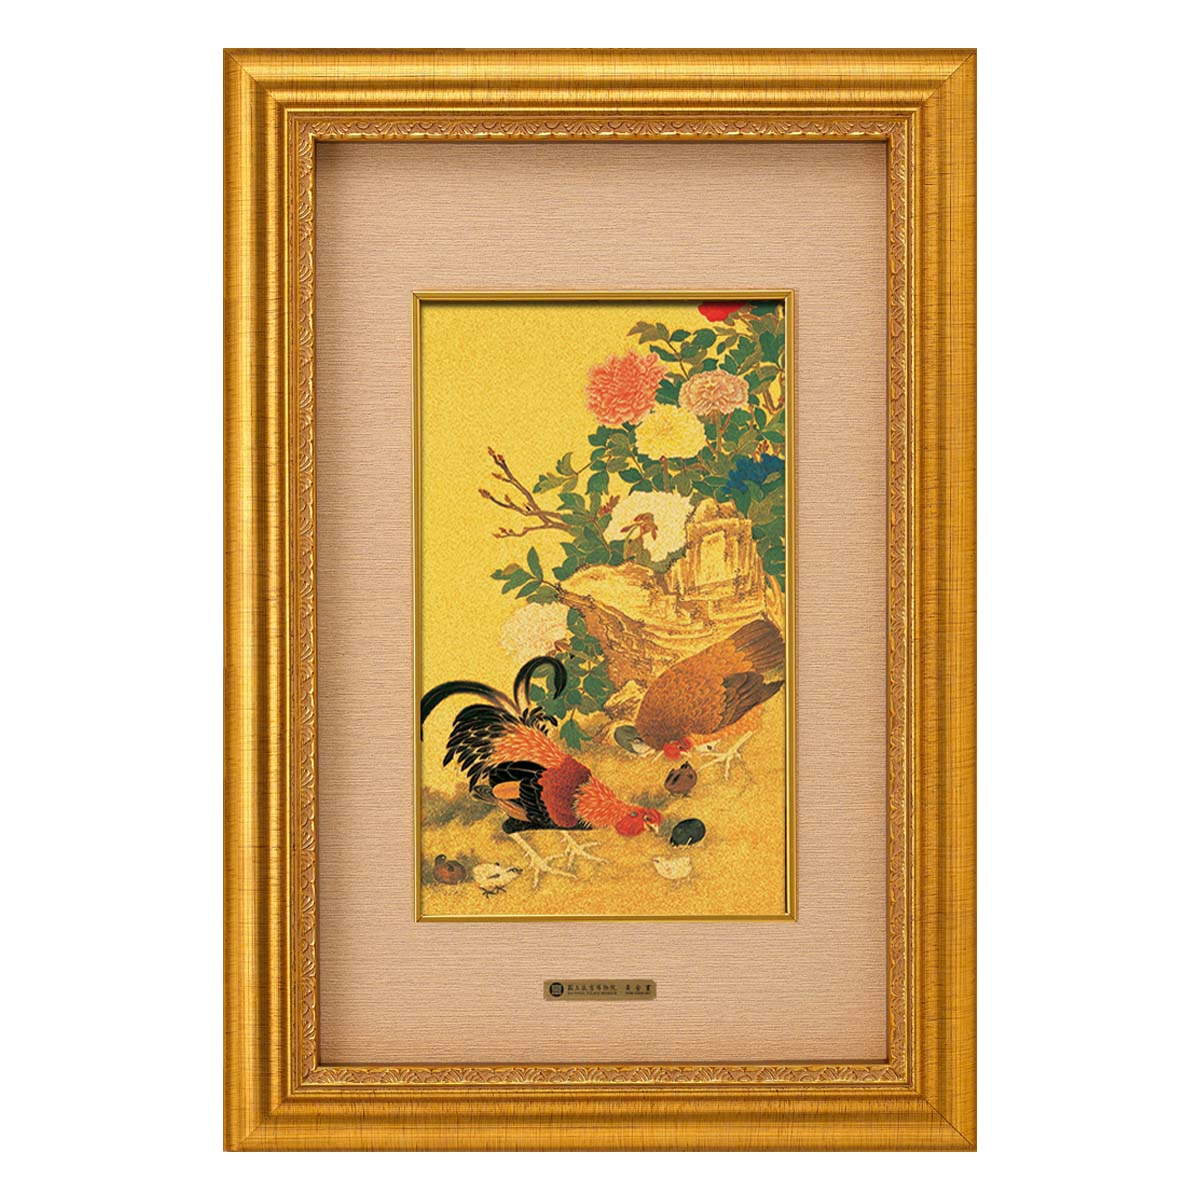 故宮精品網路商城- 富貴黃金畫-富貴吉慶(金框)